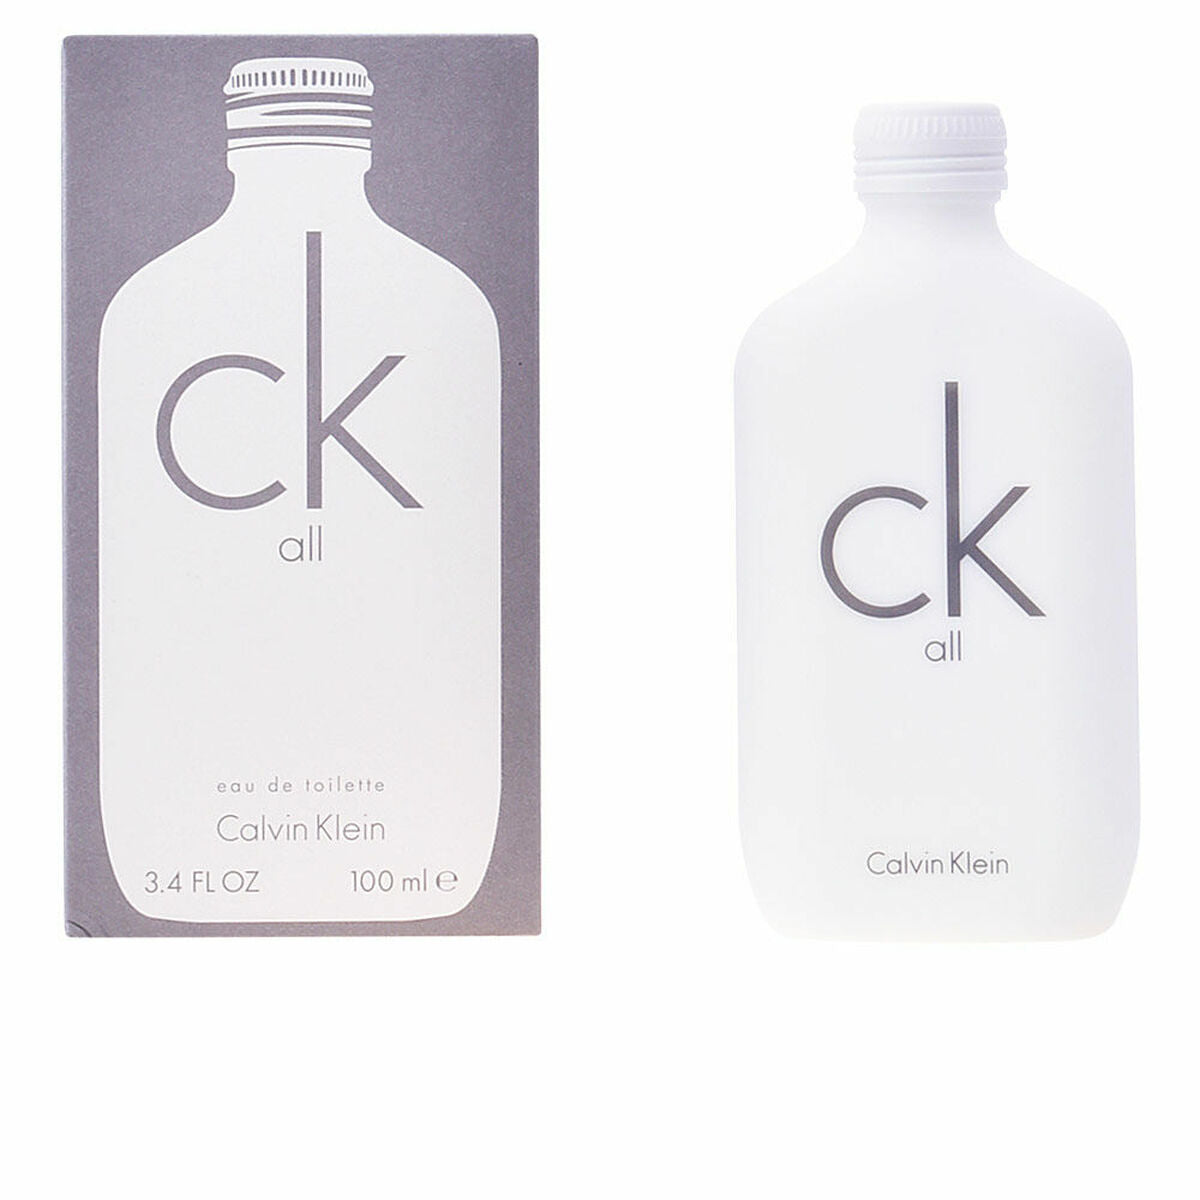 Parfum Unisex   Calvin Klein CK All   (100 ml)